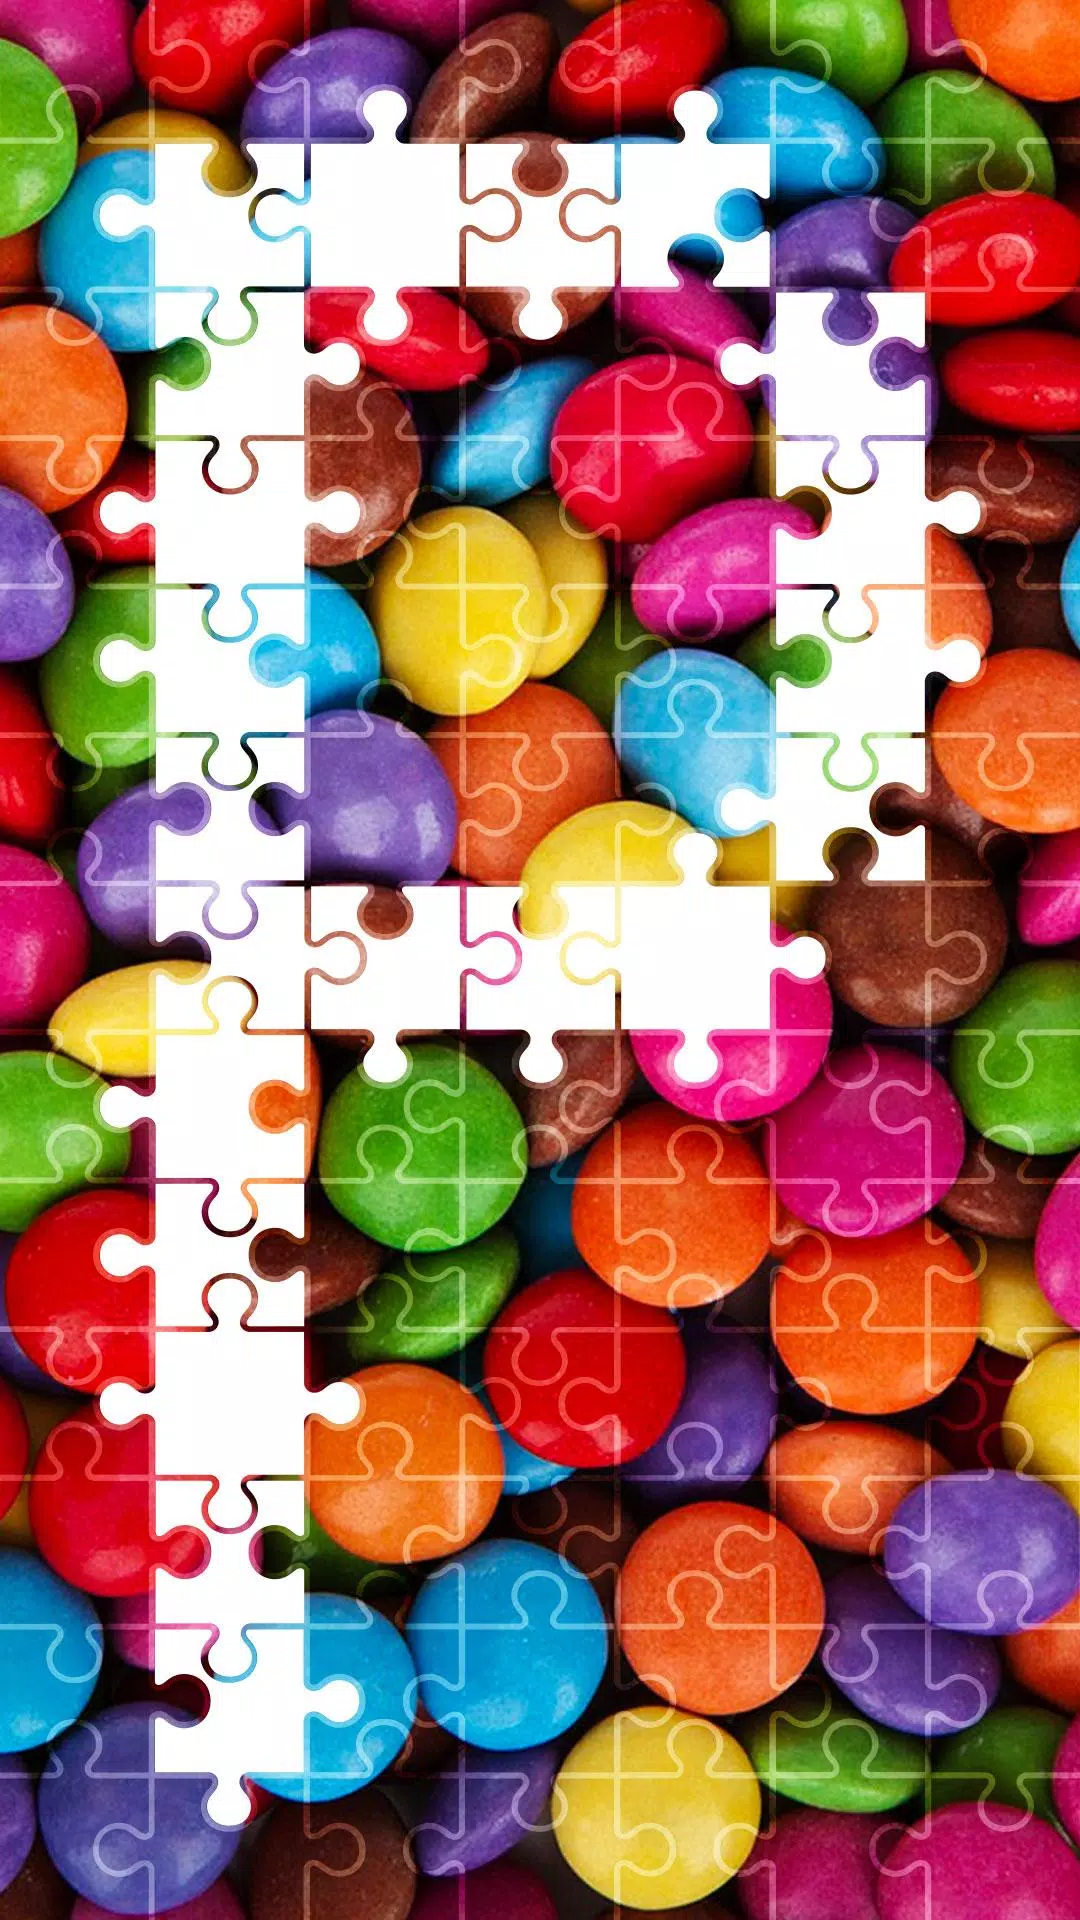 Jogos de quebra cabeça - Melhor puzzle gratis